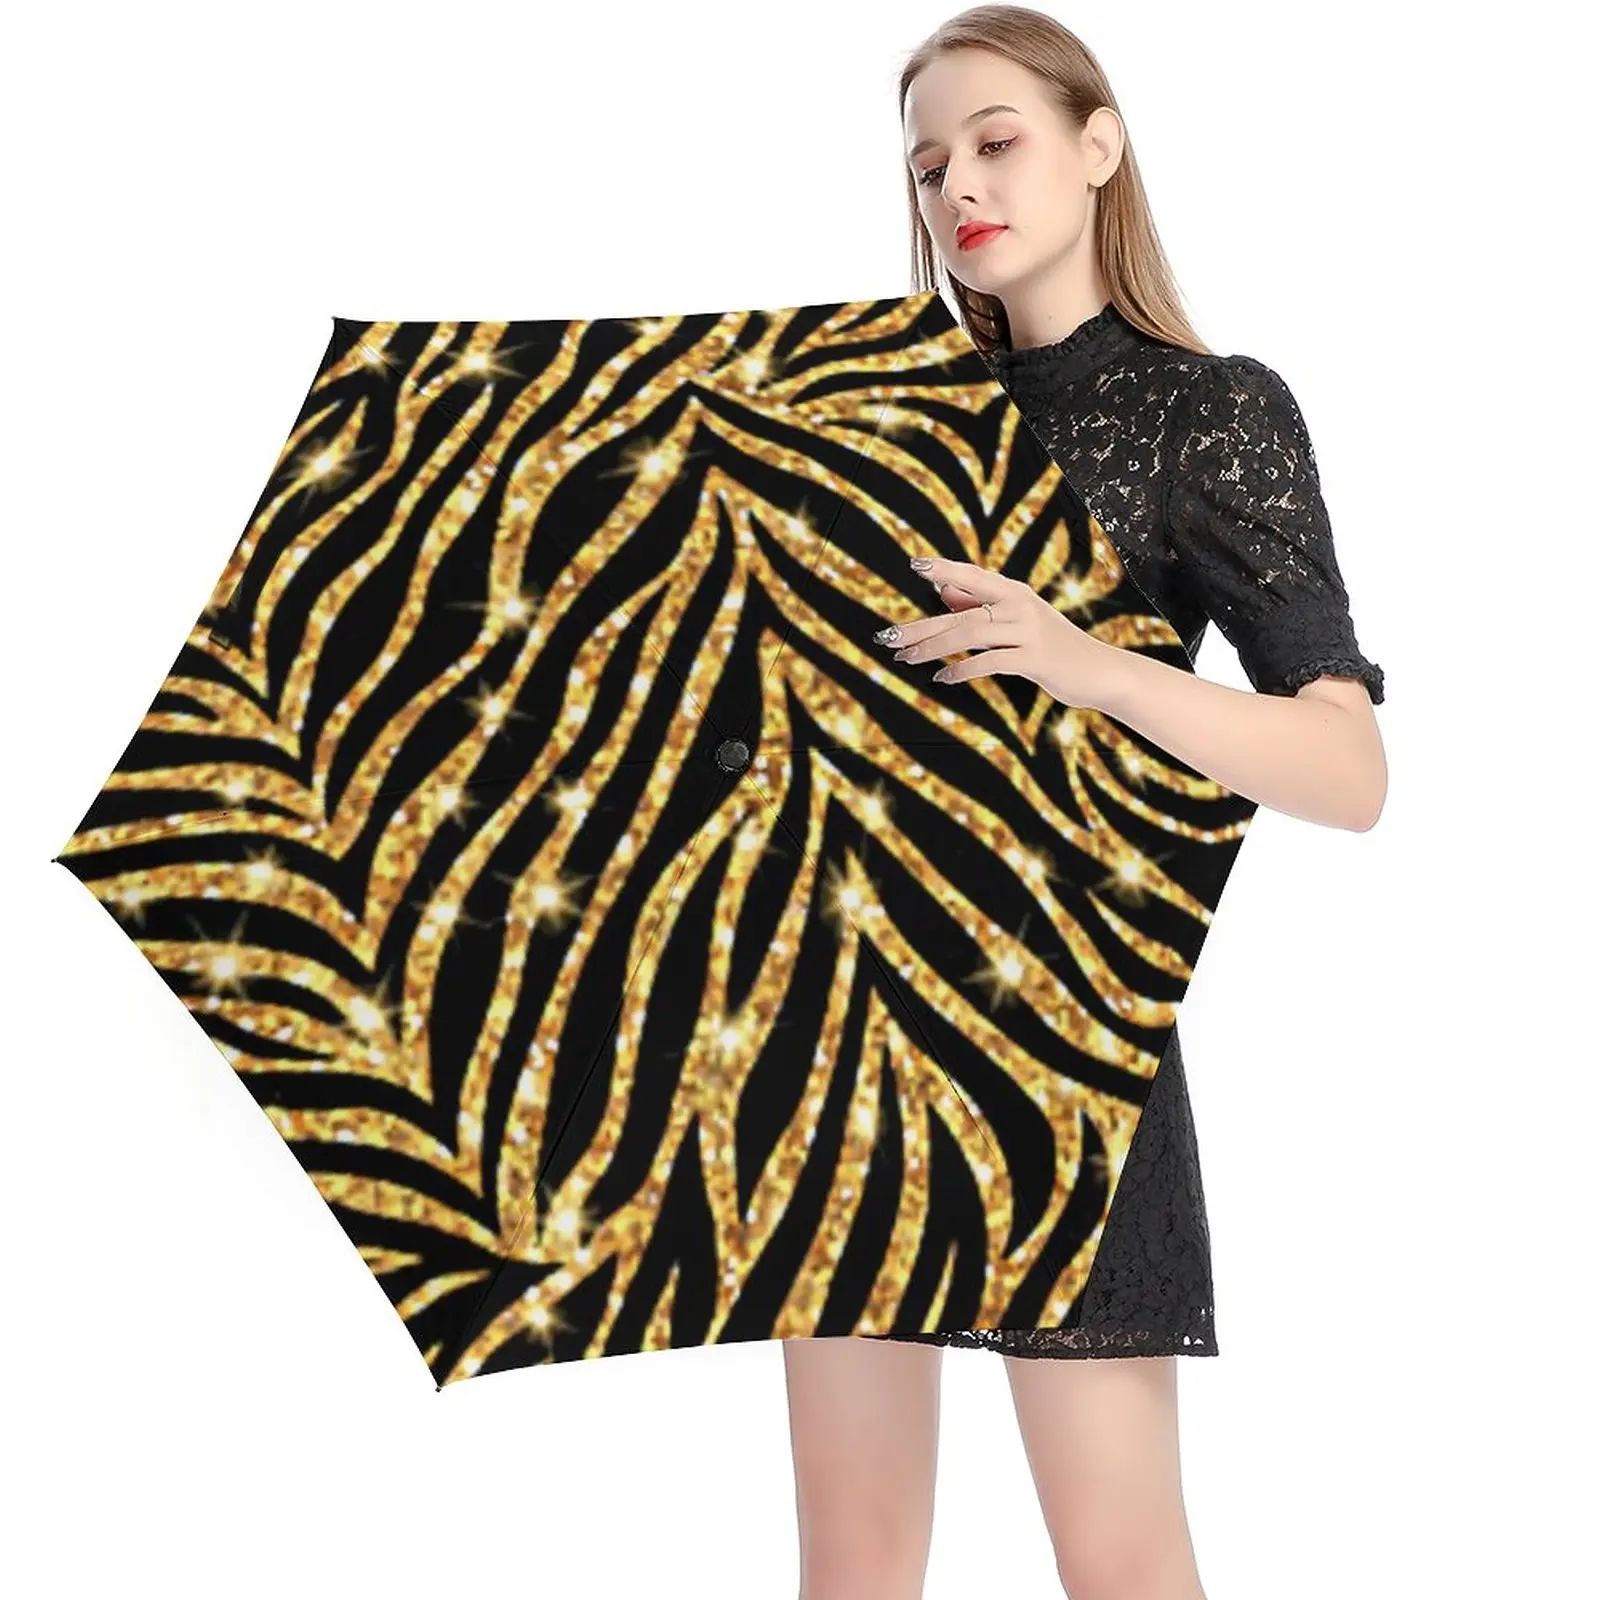 

Black And Gold Zebra 5 Fold 6 Ribs Umbrella Animal Print Black Coat Pocket Umbrella Wind Proof Umbrellas for Men Women